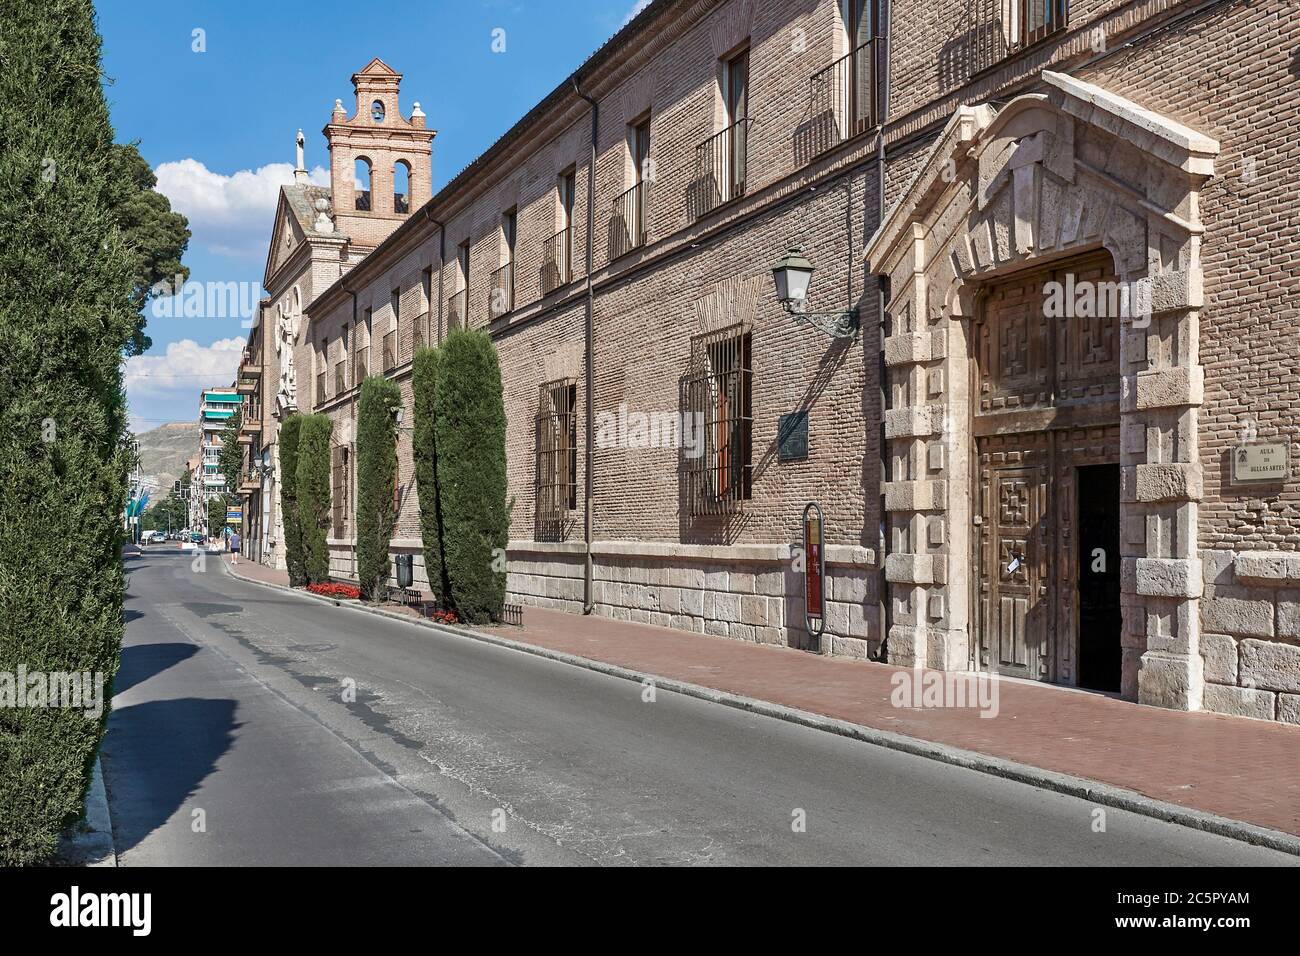 Colegio-Convento de San Basilio, bâtiment de style baroque du XVIIIe siècle, centre culturel et salle de classe des beaux-arts à Alcalá de Henares, Madrid, Europe Banque D'Images